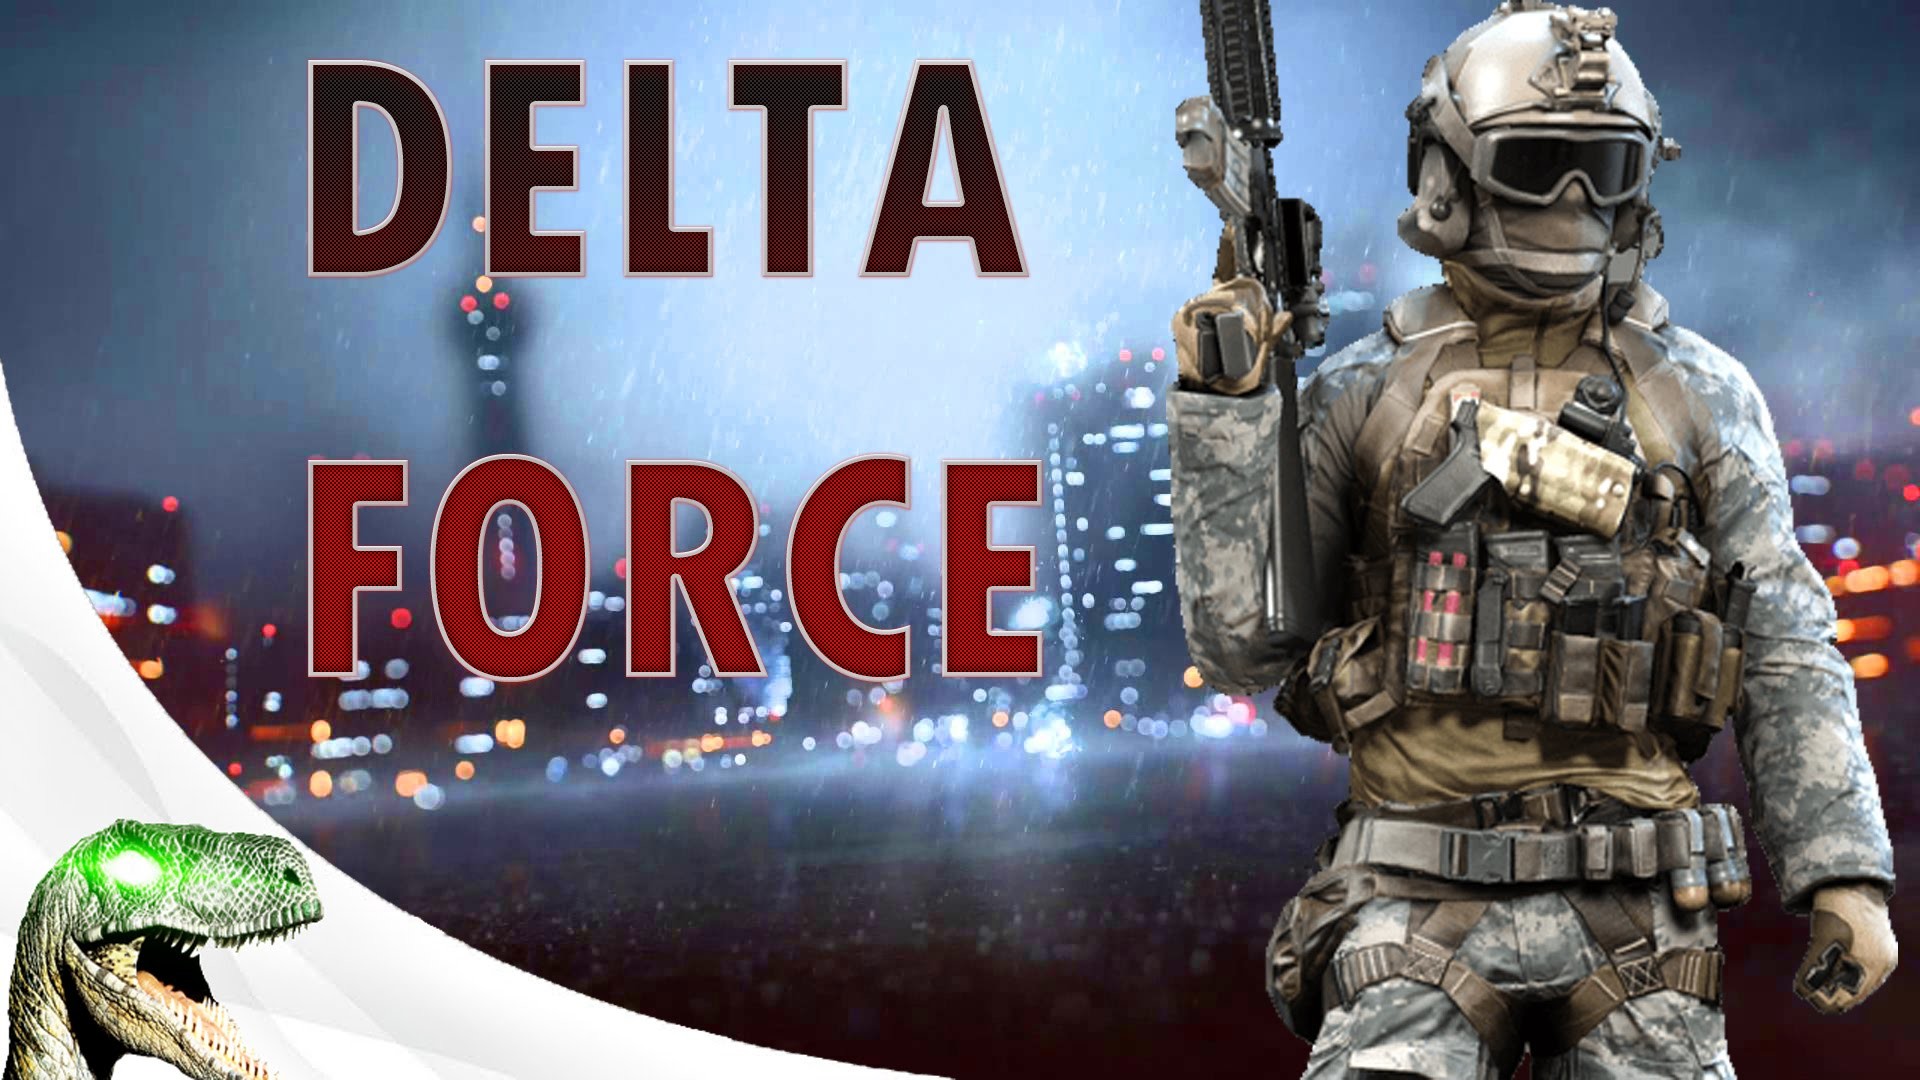 델타 포스 벽지,액션 어드벤처 게임,사수 게임,pc 게임,병사,계략